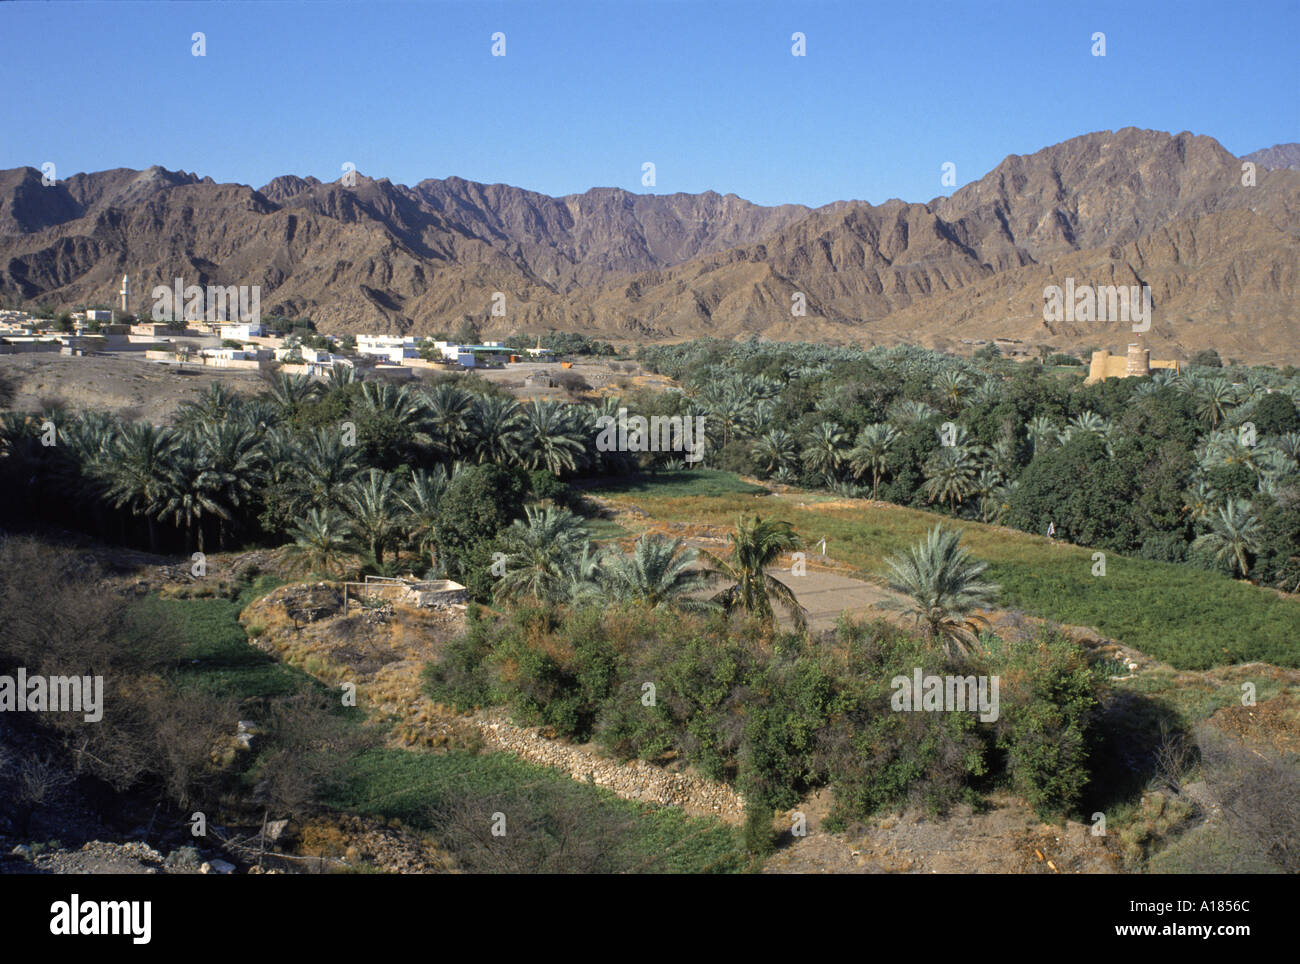 Vue aérienne sur la ville oasis d'Bithnal les montagnes d'Arabie U A E Moyen-orient UN C Waltham Banque D'Images